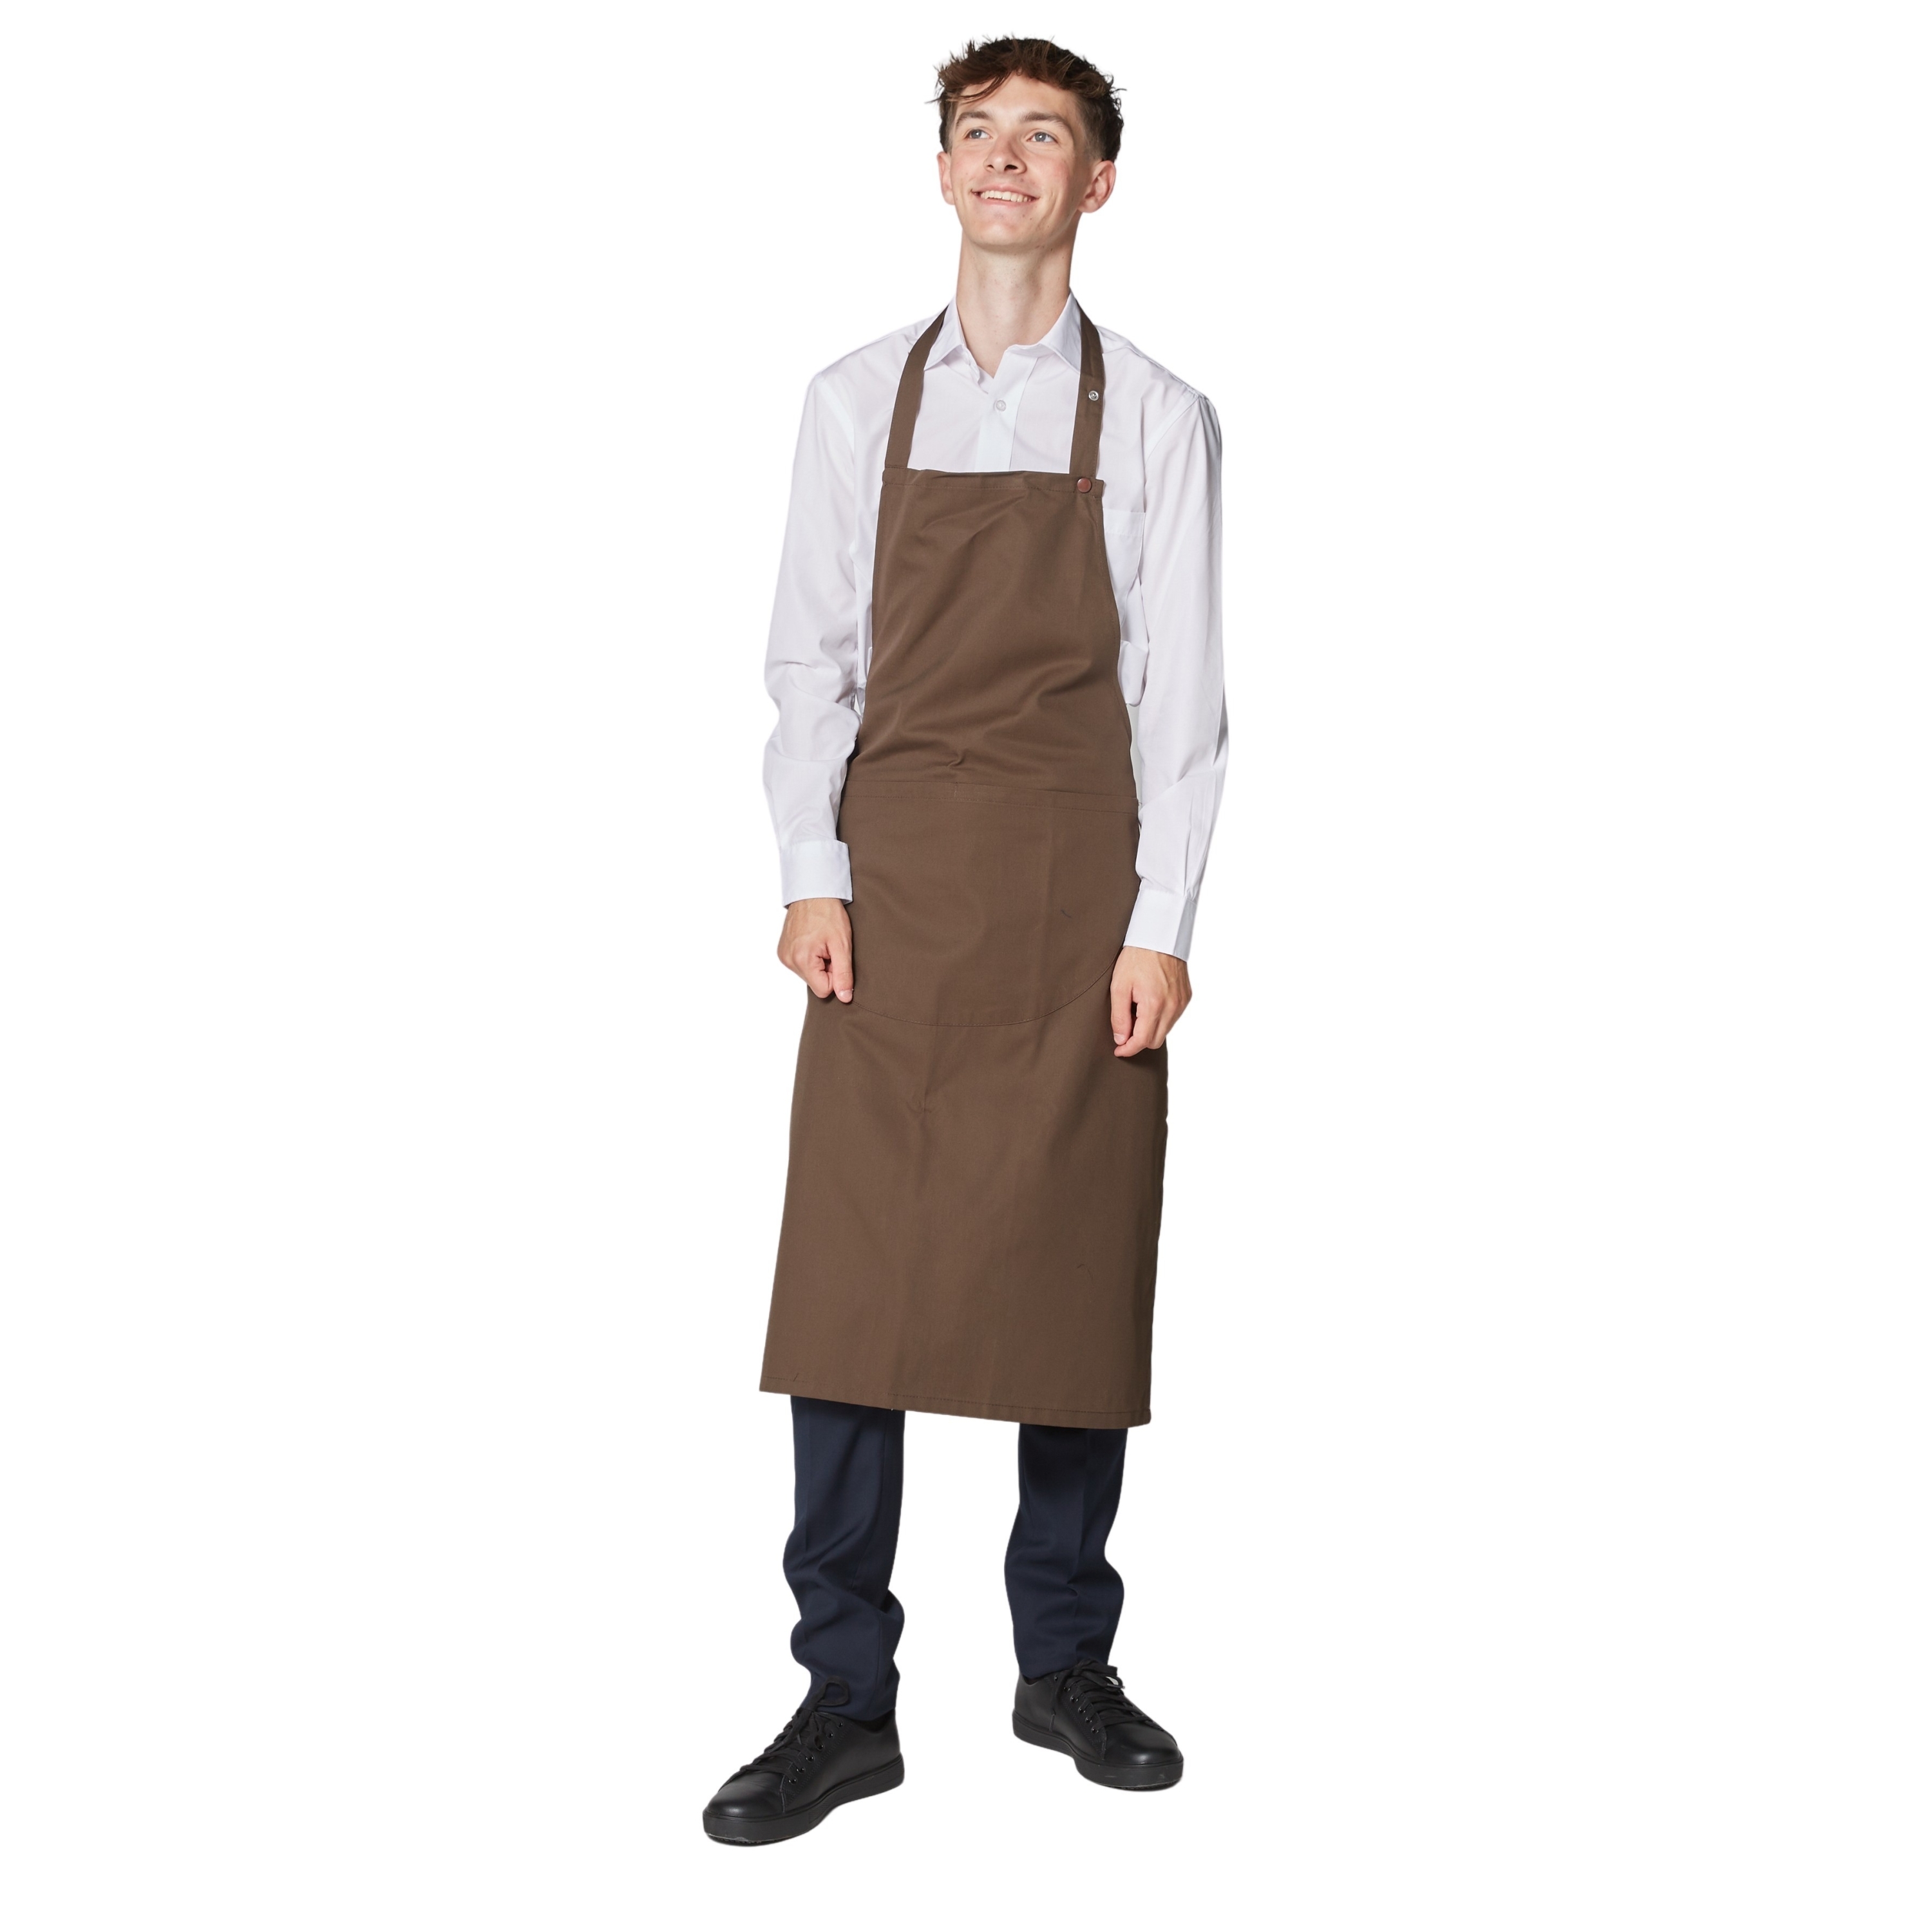 Tablier de cuisinier ou de barman, court 40cm, couleur marron